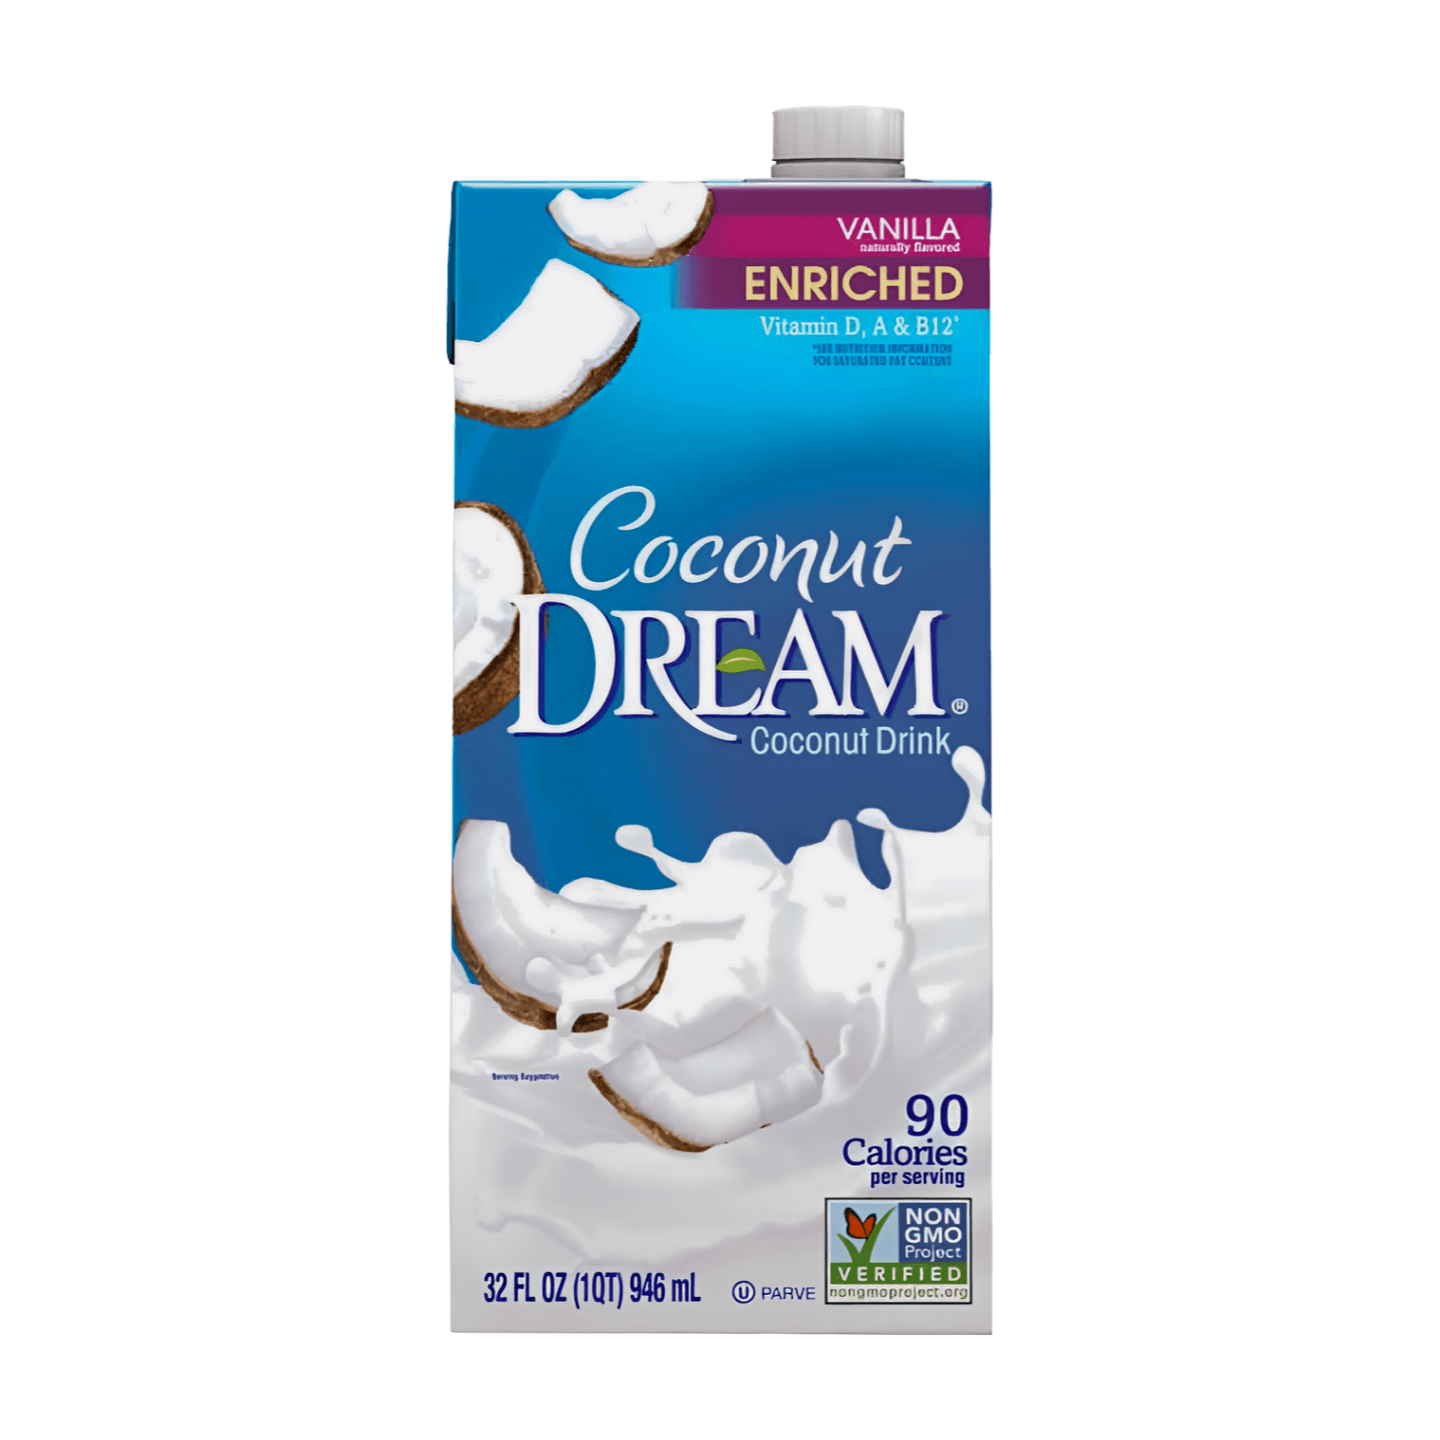 Coconut Dream™ Vanilla Coconut Drink